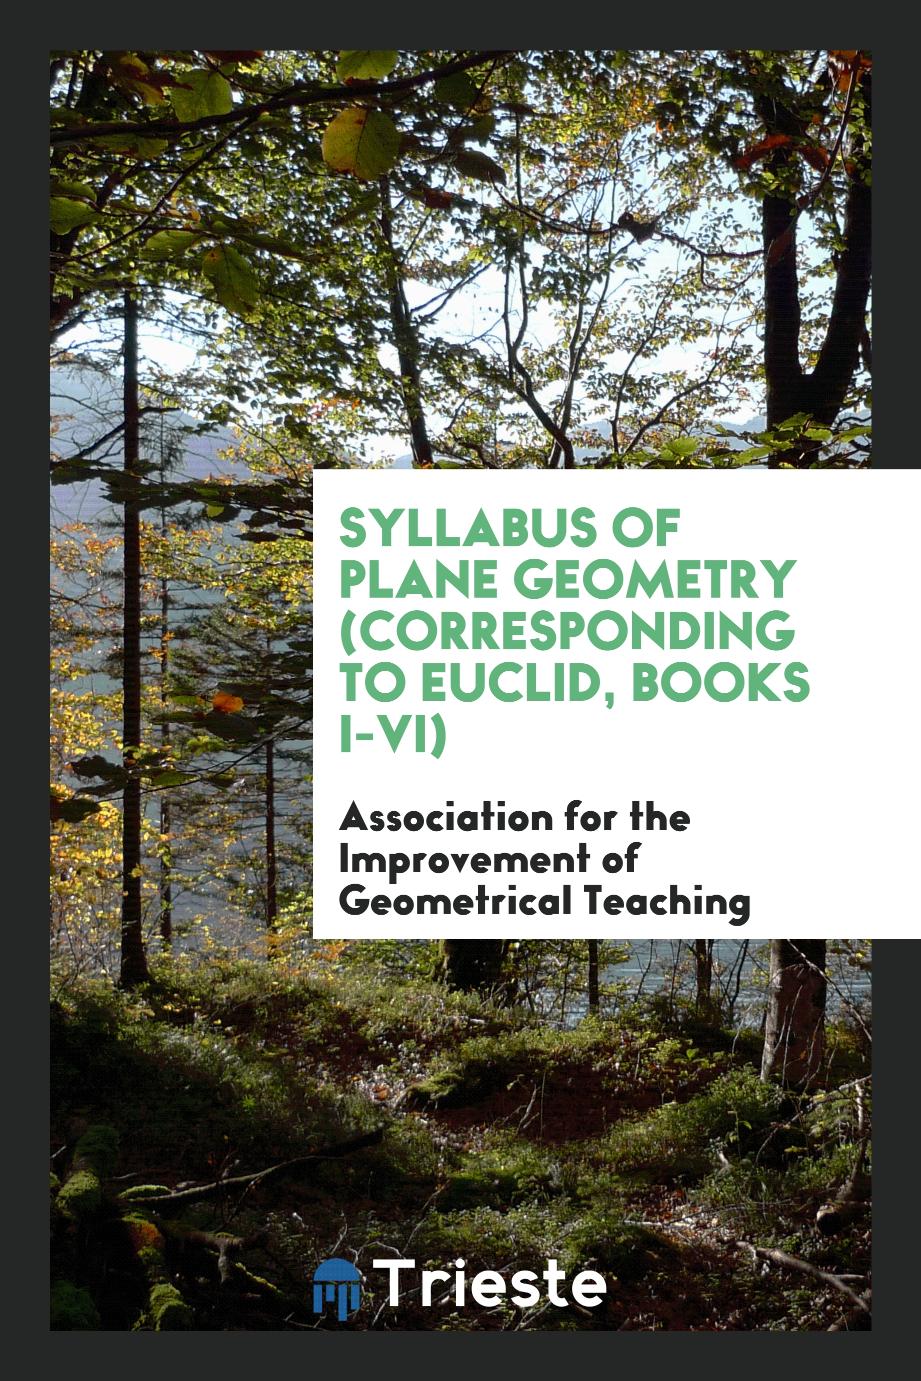 Syllabus of Plane Geometry (corresponding to Euclid, Books I-VI)